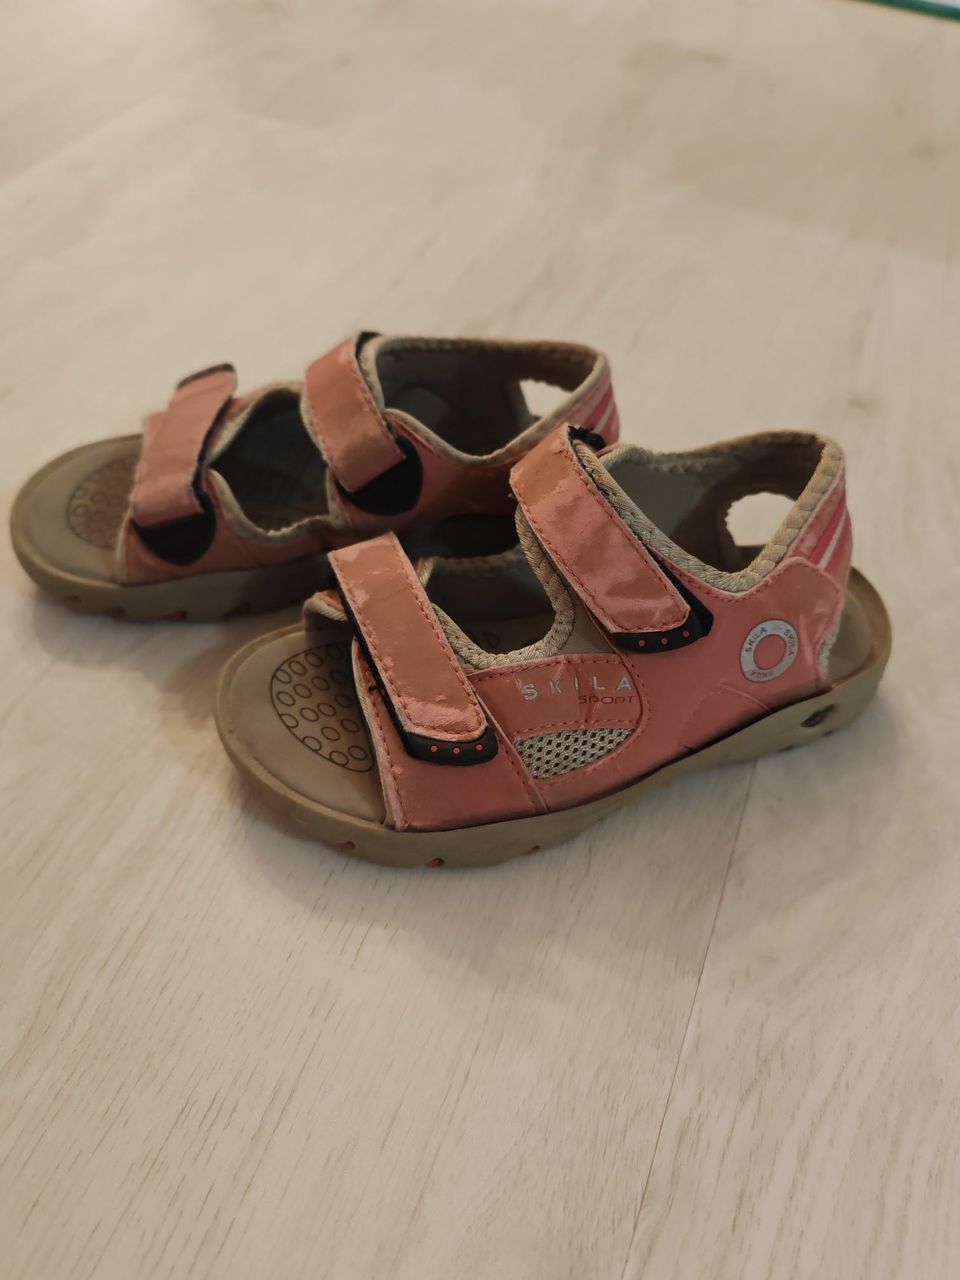 Tyttöjen Skila 31 koon sandaalit